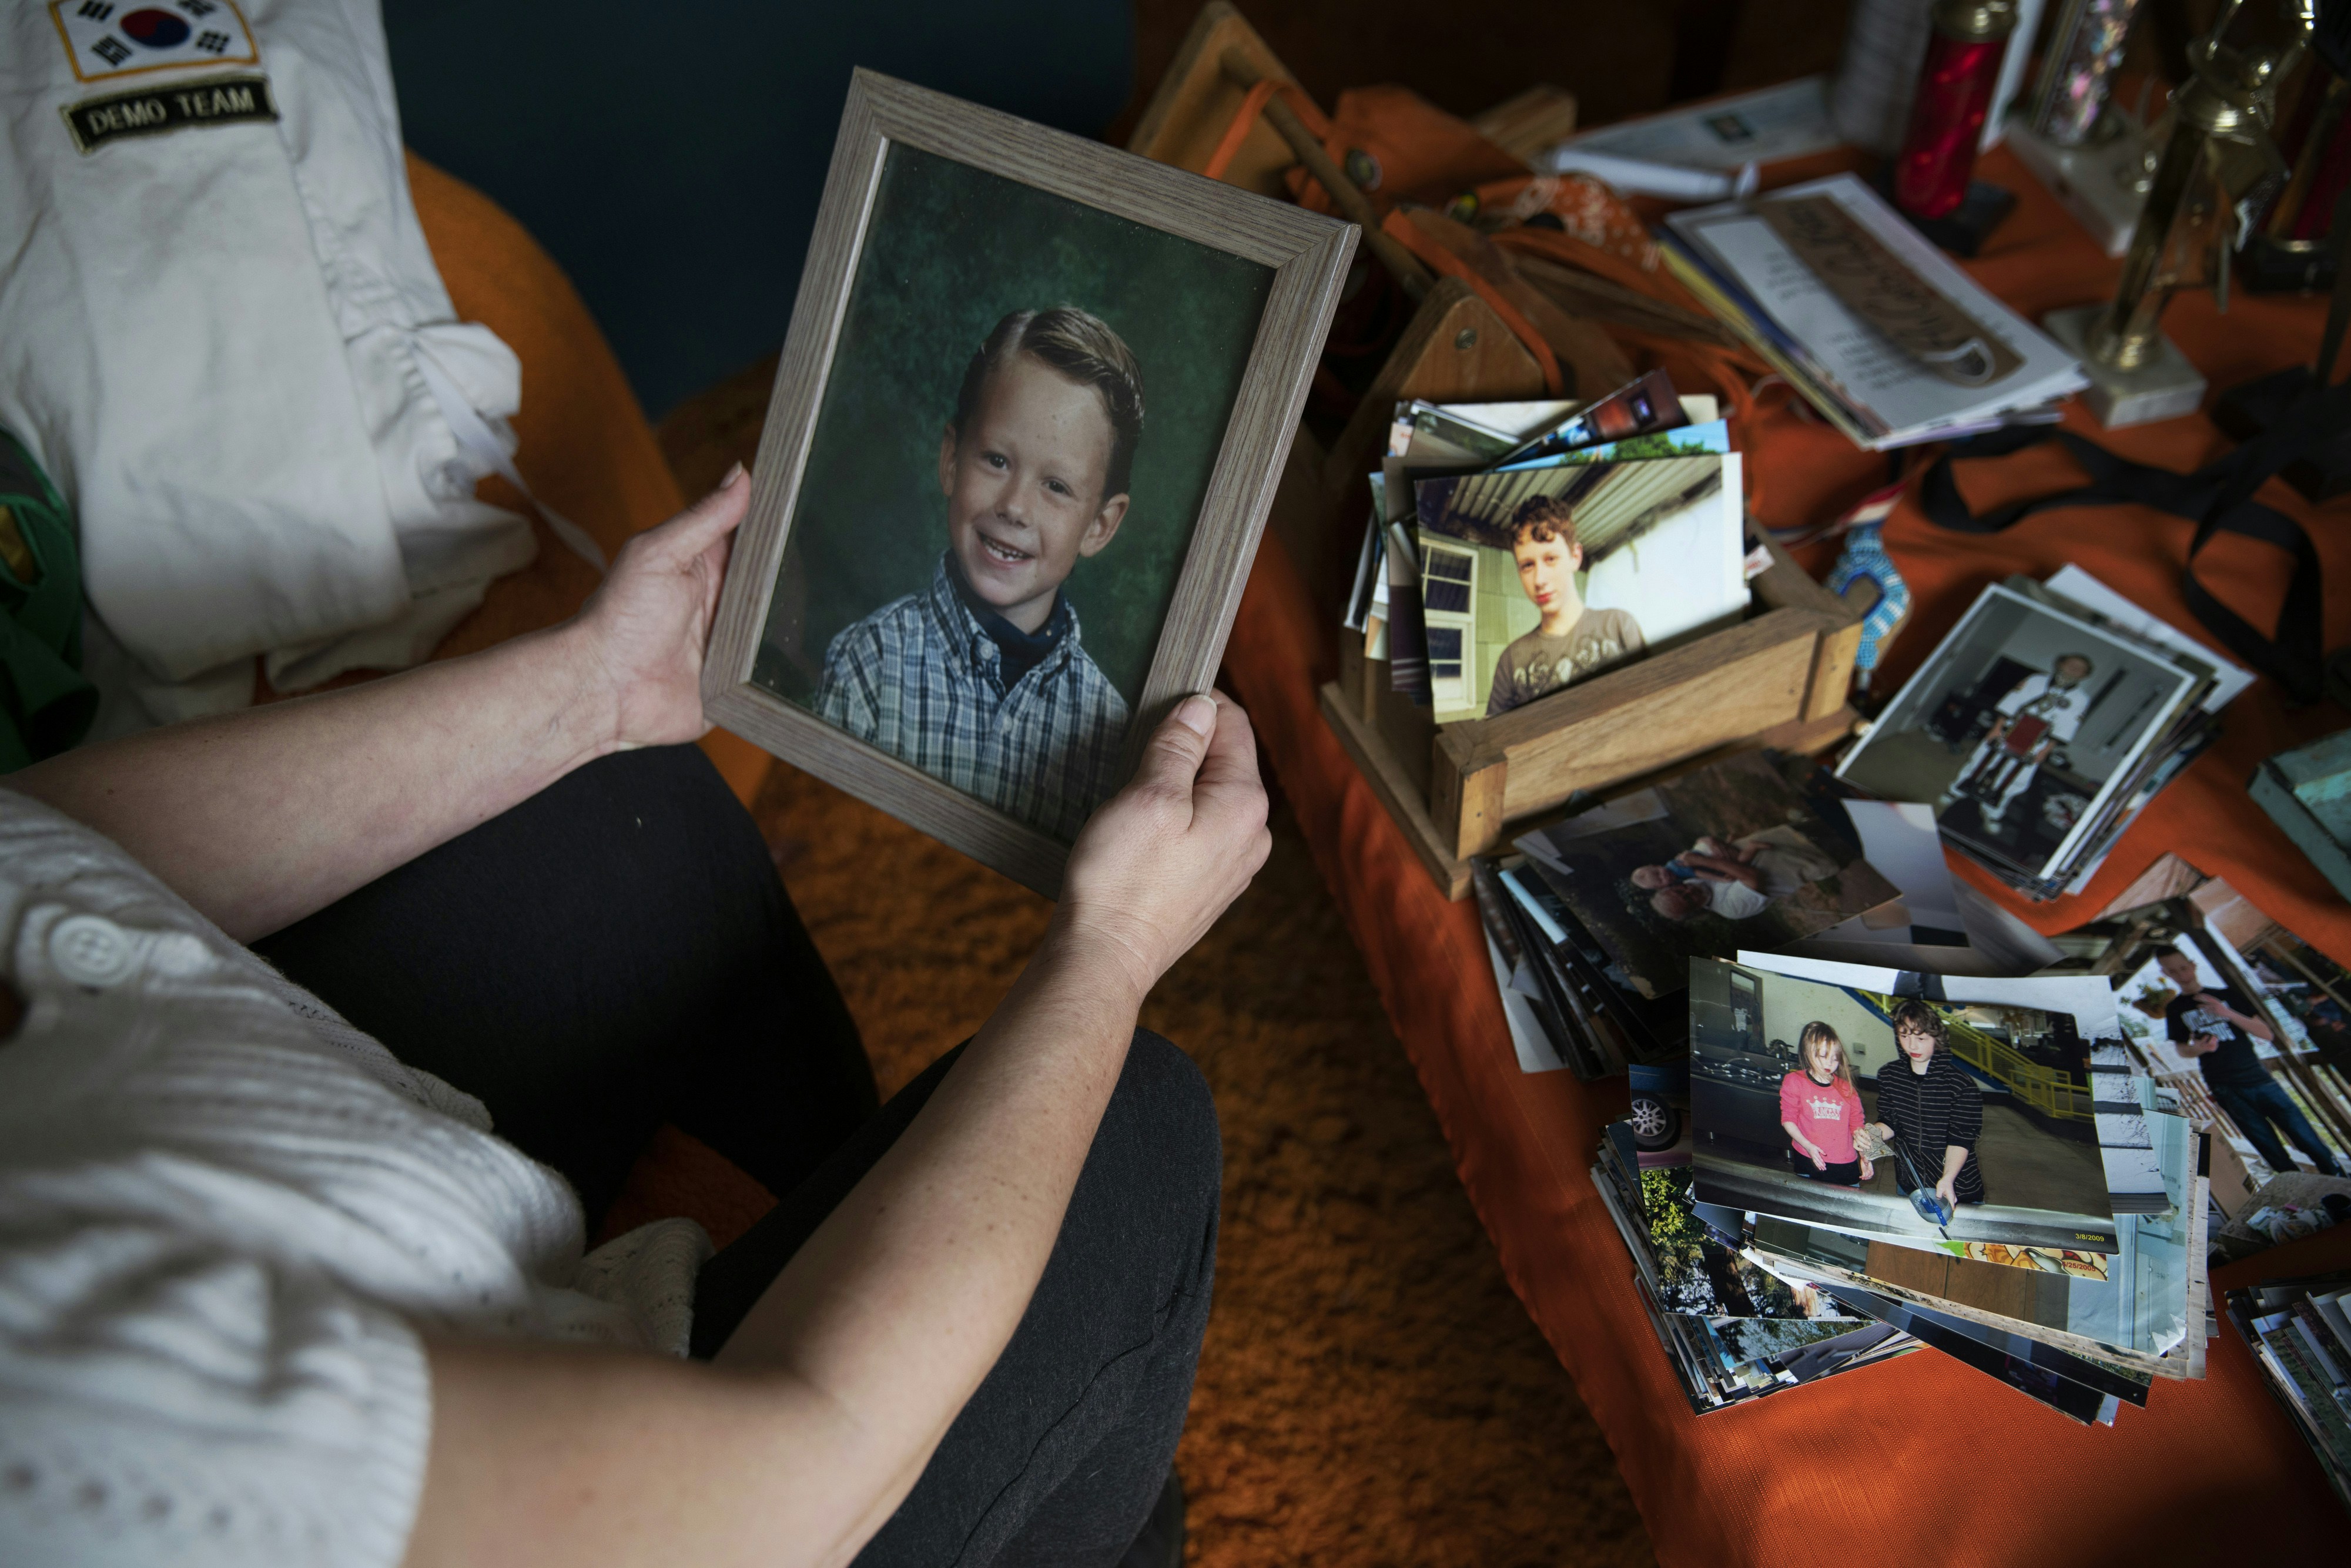 Laura Kealiher tient une photo d'enfance de son fils Sean Kealiher, un militant anti-faciste de Portland tué en 2019 alors qu'il avait 23 ans, chez elle à Portland, Oregon, le 30 janvier 2021. Brooke Herbert pour The Intercept